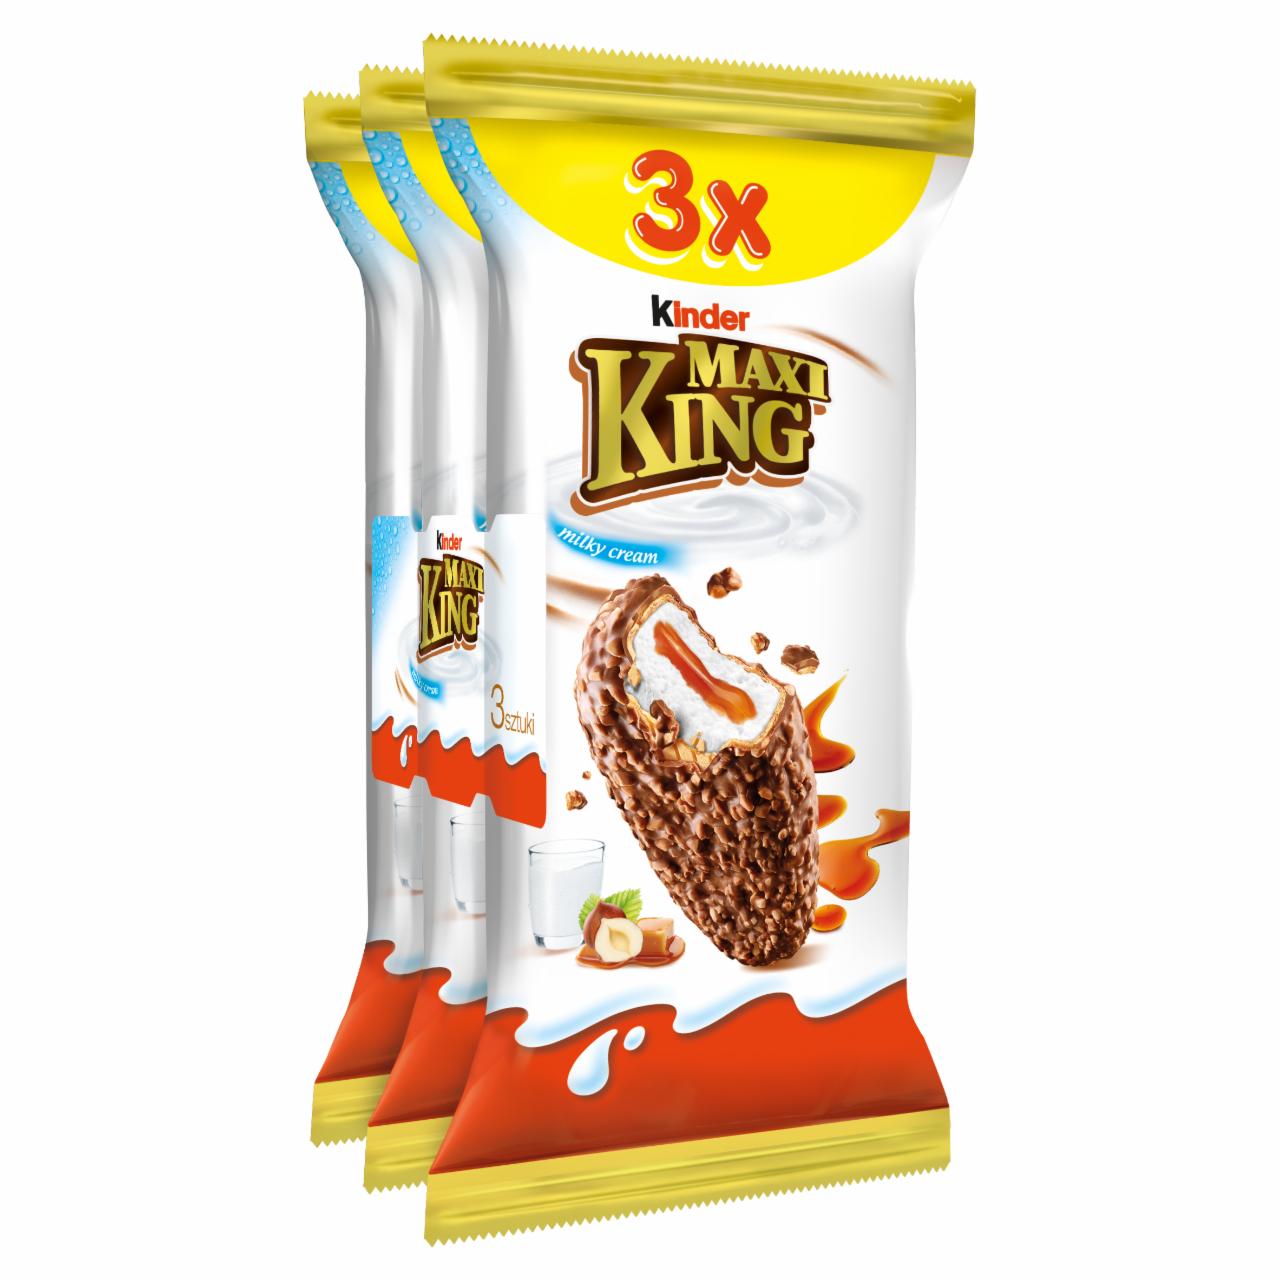 Zdjęcia - Kinder Maxi King Wafel z mlecznym i karmelowym nadzieniem pokryty czekoladą i orzechami 3 x 35 g